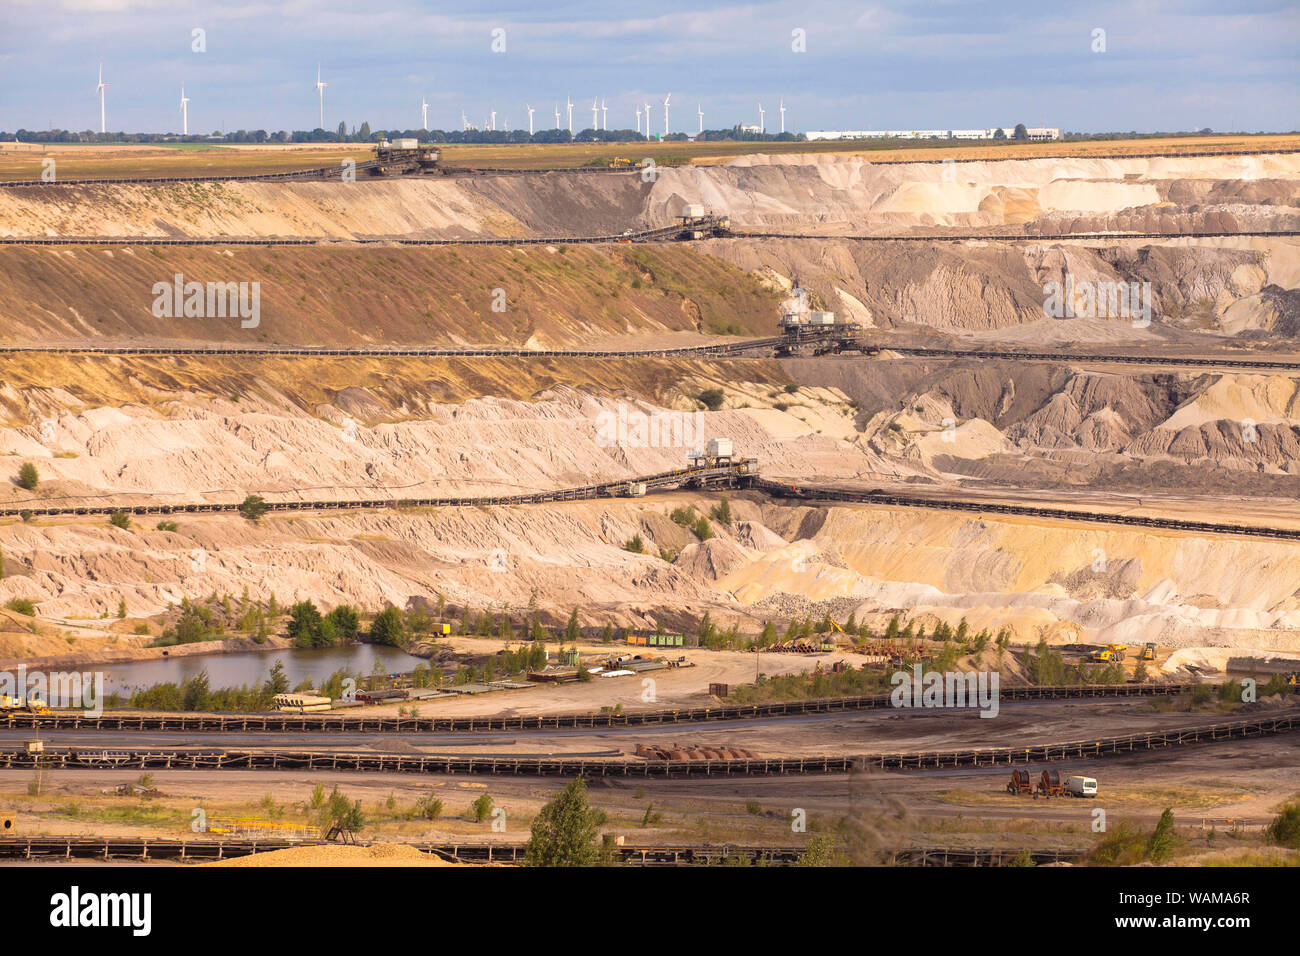 Inden mine de lignite à ciel ouvert près de Juelich, exploité par RWE Power AG, Rhénanie du Nord-Westphalie, Allemagne. Braunkohletagebau Inden bei Juelich, zu R Banque D'Images